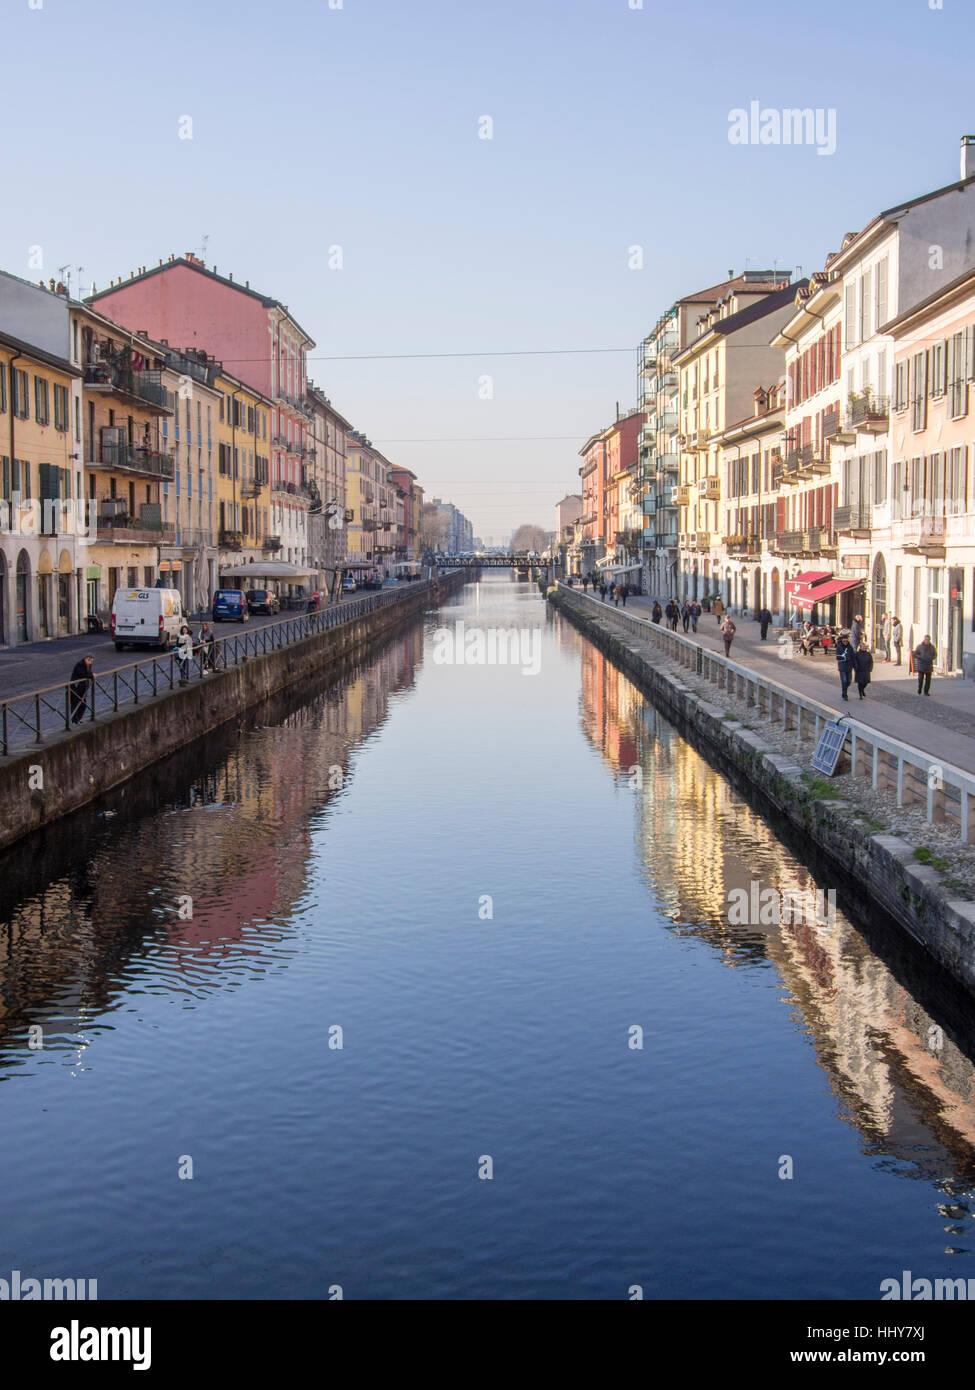 Milano , Navigli Area in winter Stock Photo - Alamy